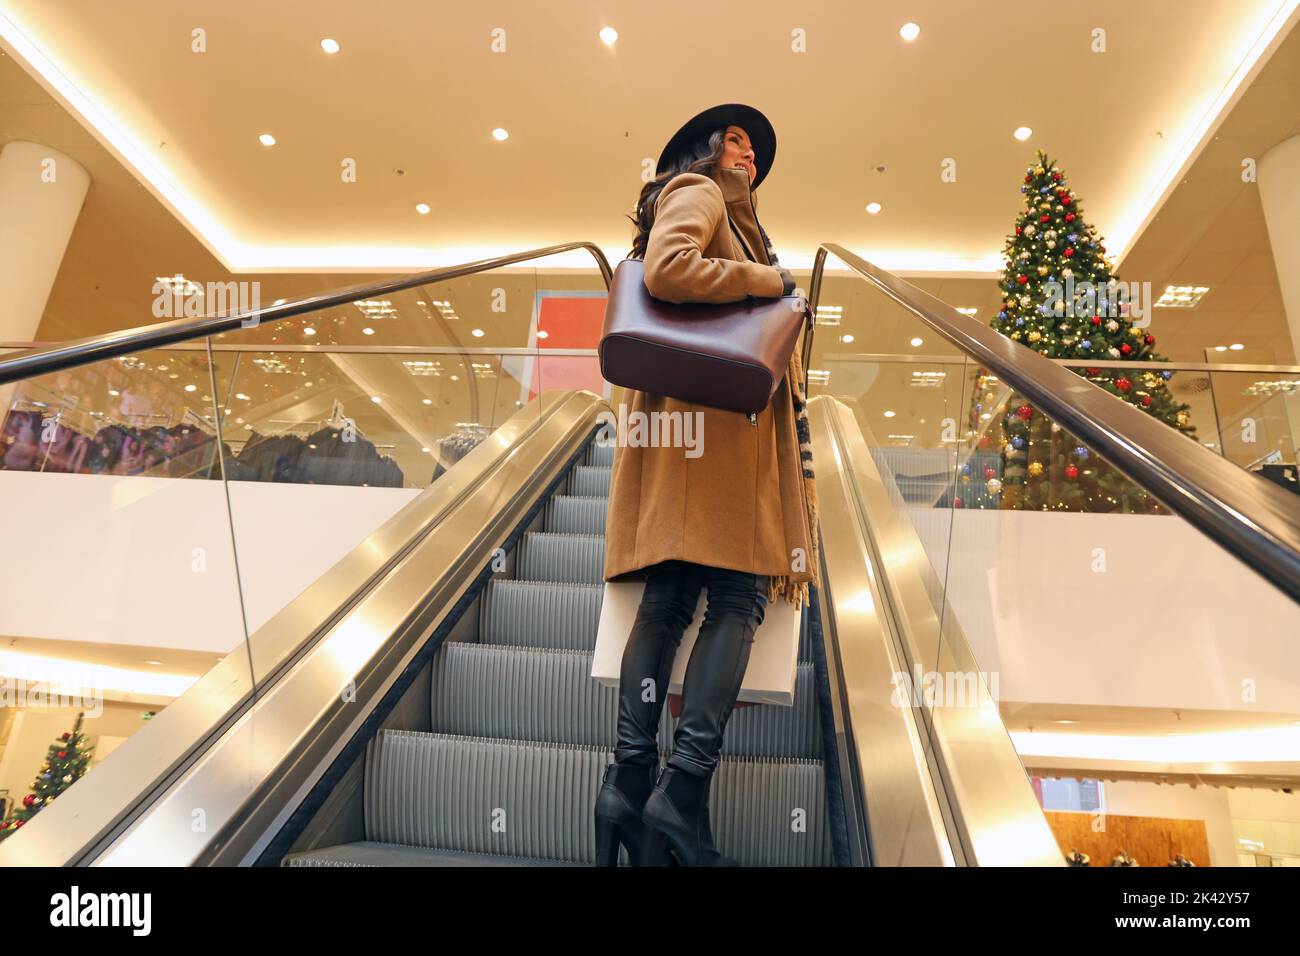 Imagen del símbolo: Mujer joven elegante disfruta de las compras (modelo publicado) Foto de stock